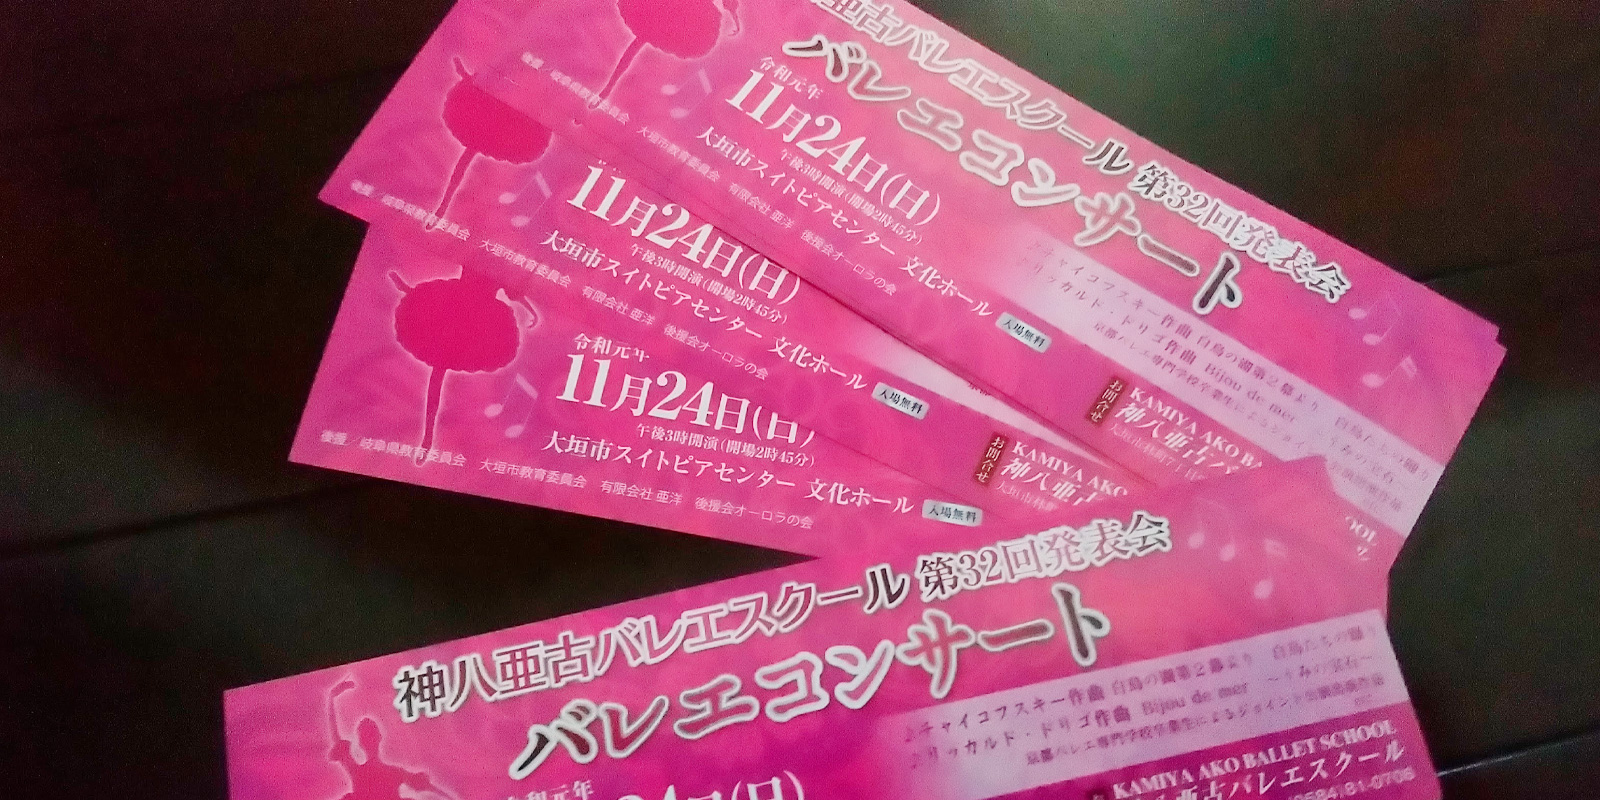 バレエ・ダンスの公演チケット